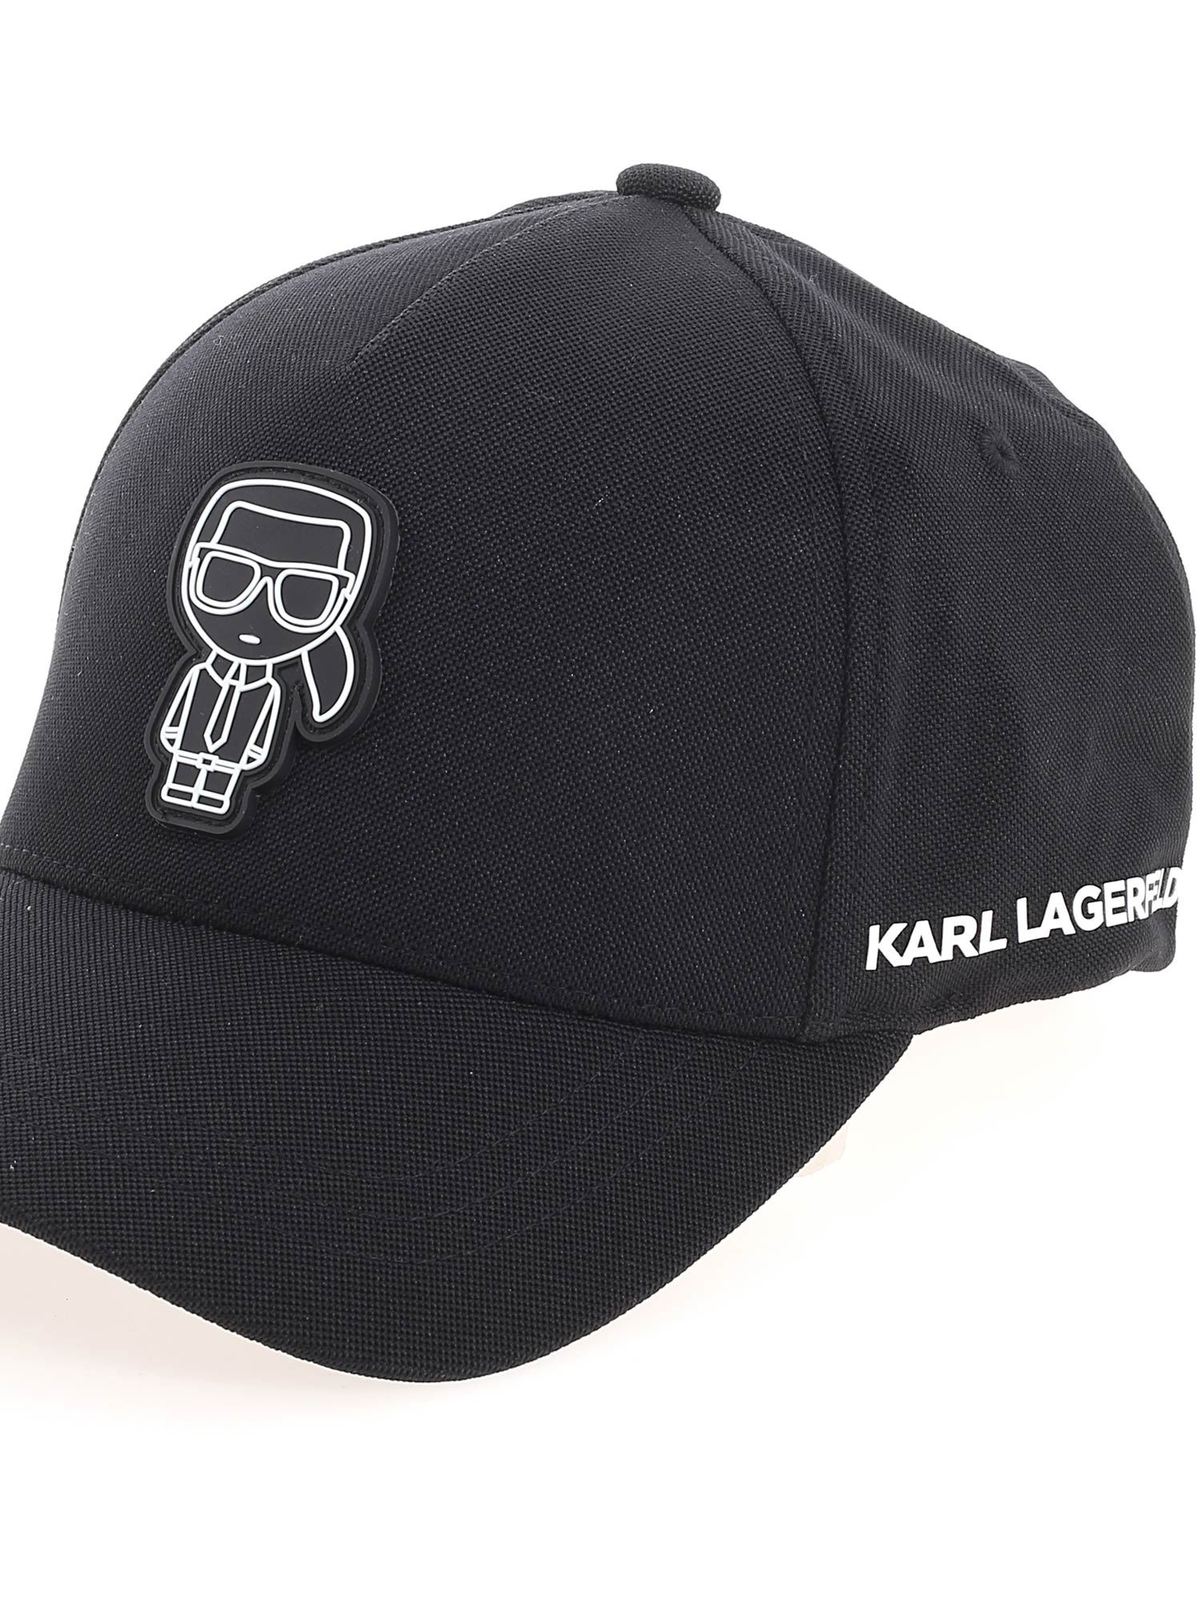 Sijpelen Heerlijk lobby Hats & caps Karl Lagerfeld - Logo patch cap in black - 805613511118990